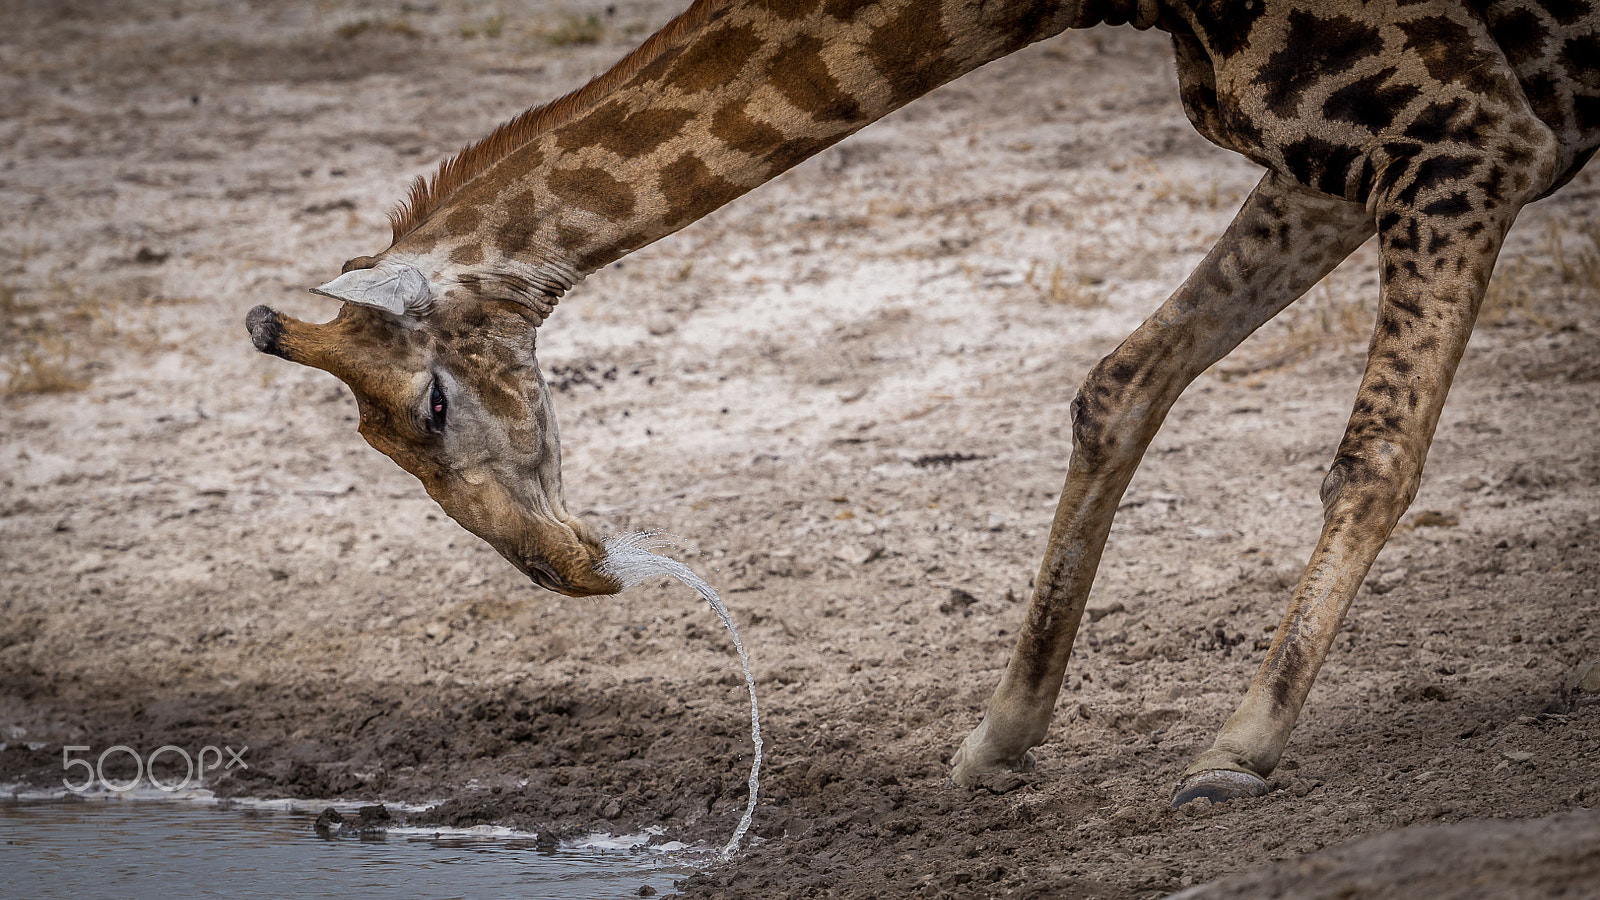 Canon EOS 6D sample photo. Water bending giraffe photography